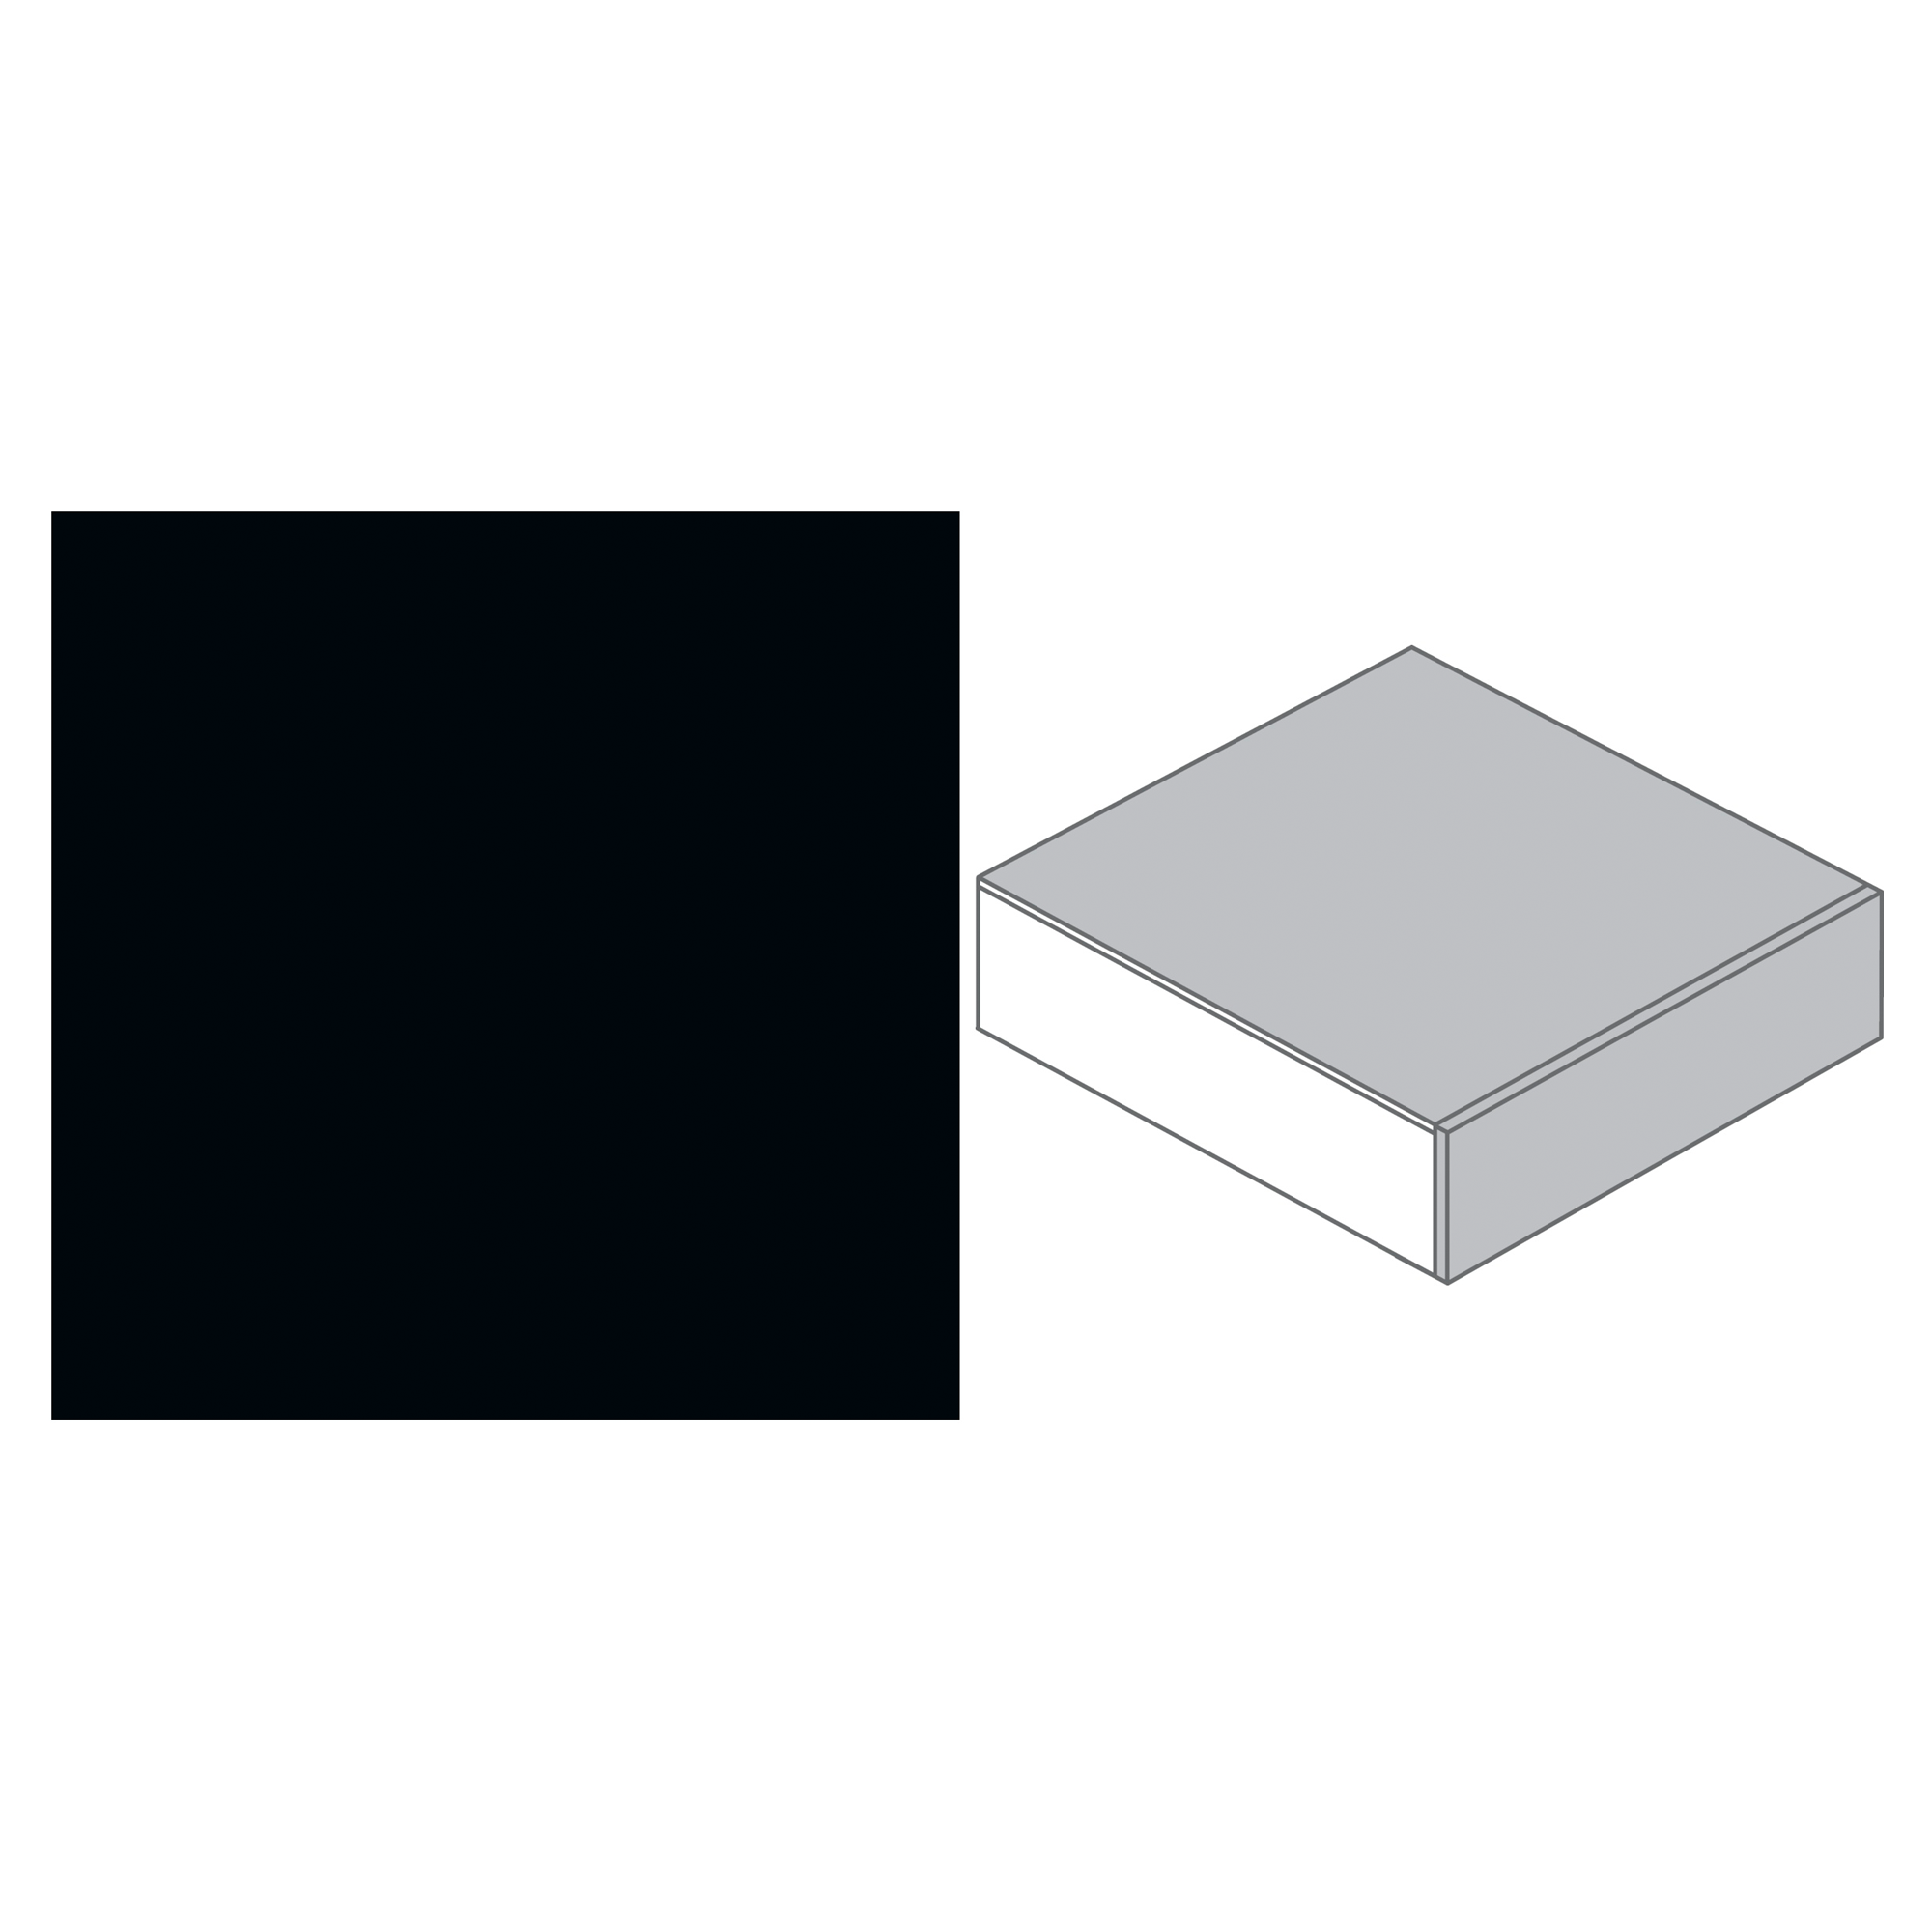 Küchenarbeitsplatte unifarben schwarz Spanplatte 4100 x 600 x 39 mm + product picture